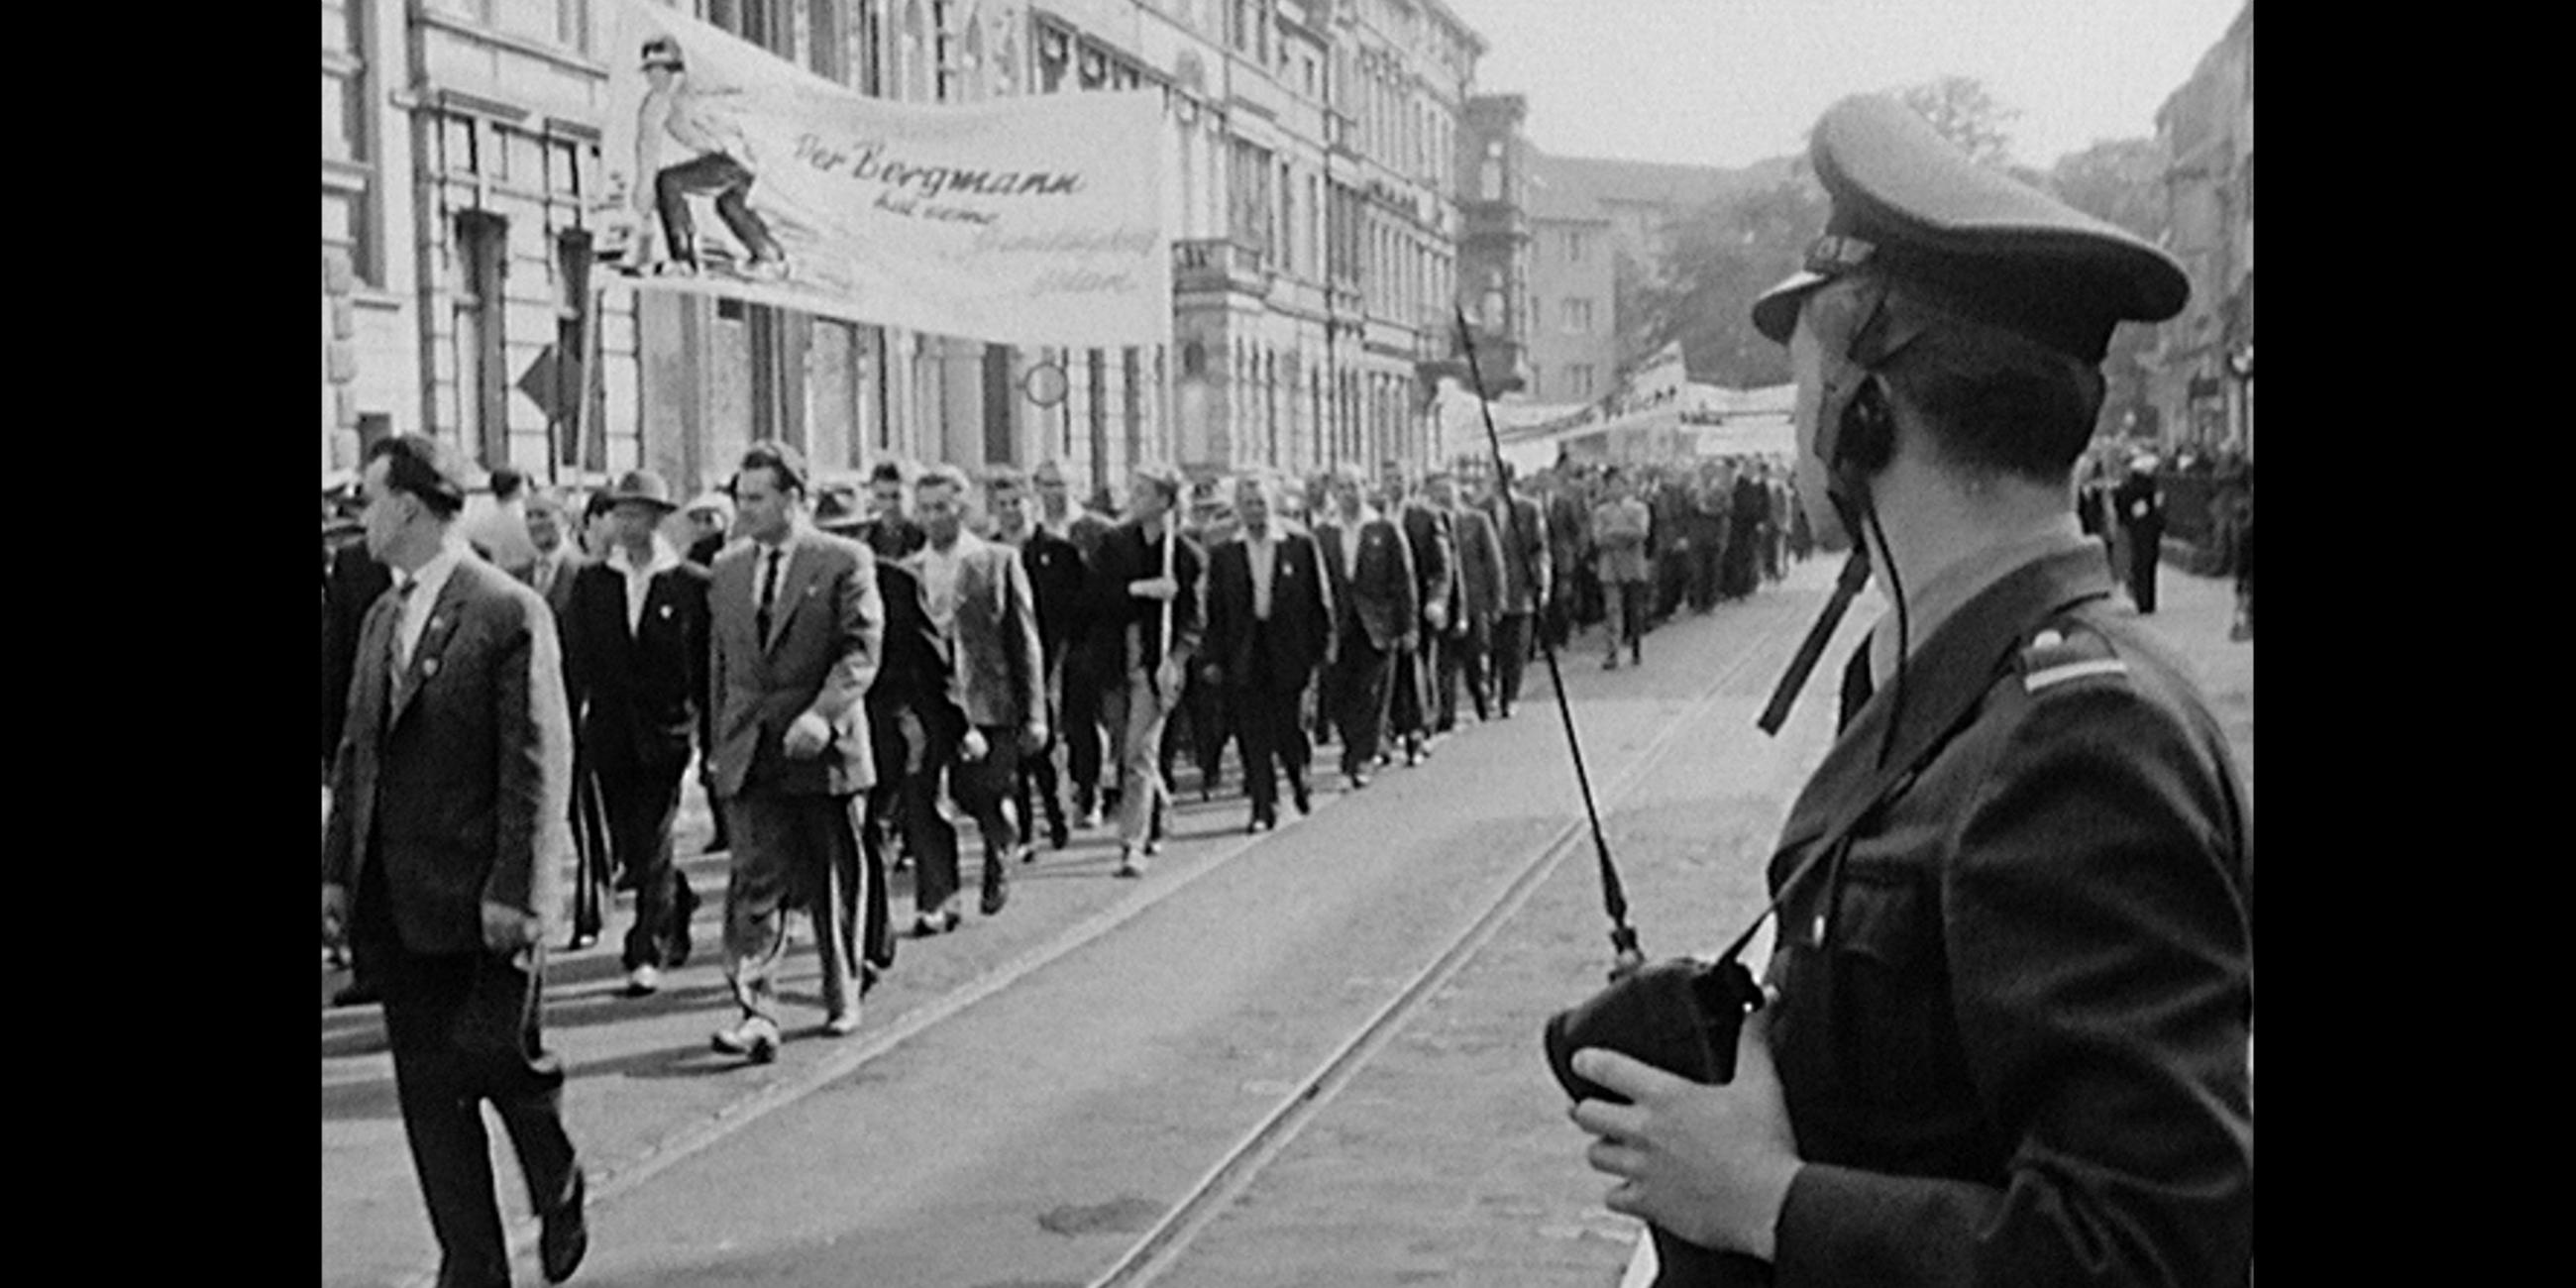 Schwarz-weiß Fotografie einer Menge an Demonstranten, rechts im Bild ein Polizist. 